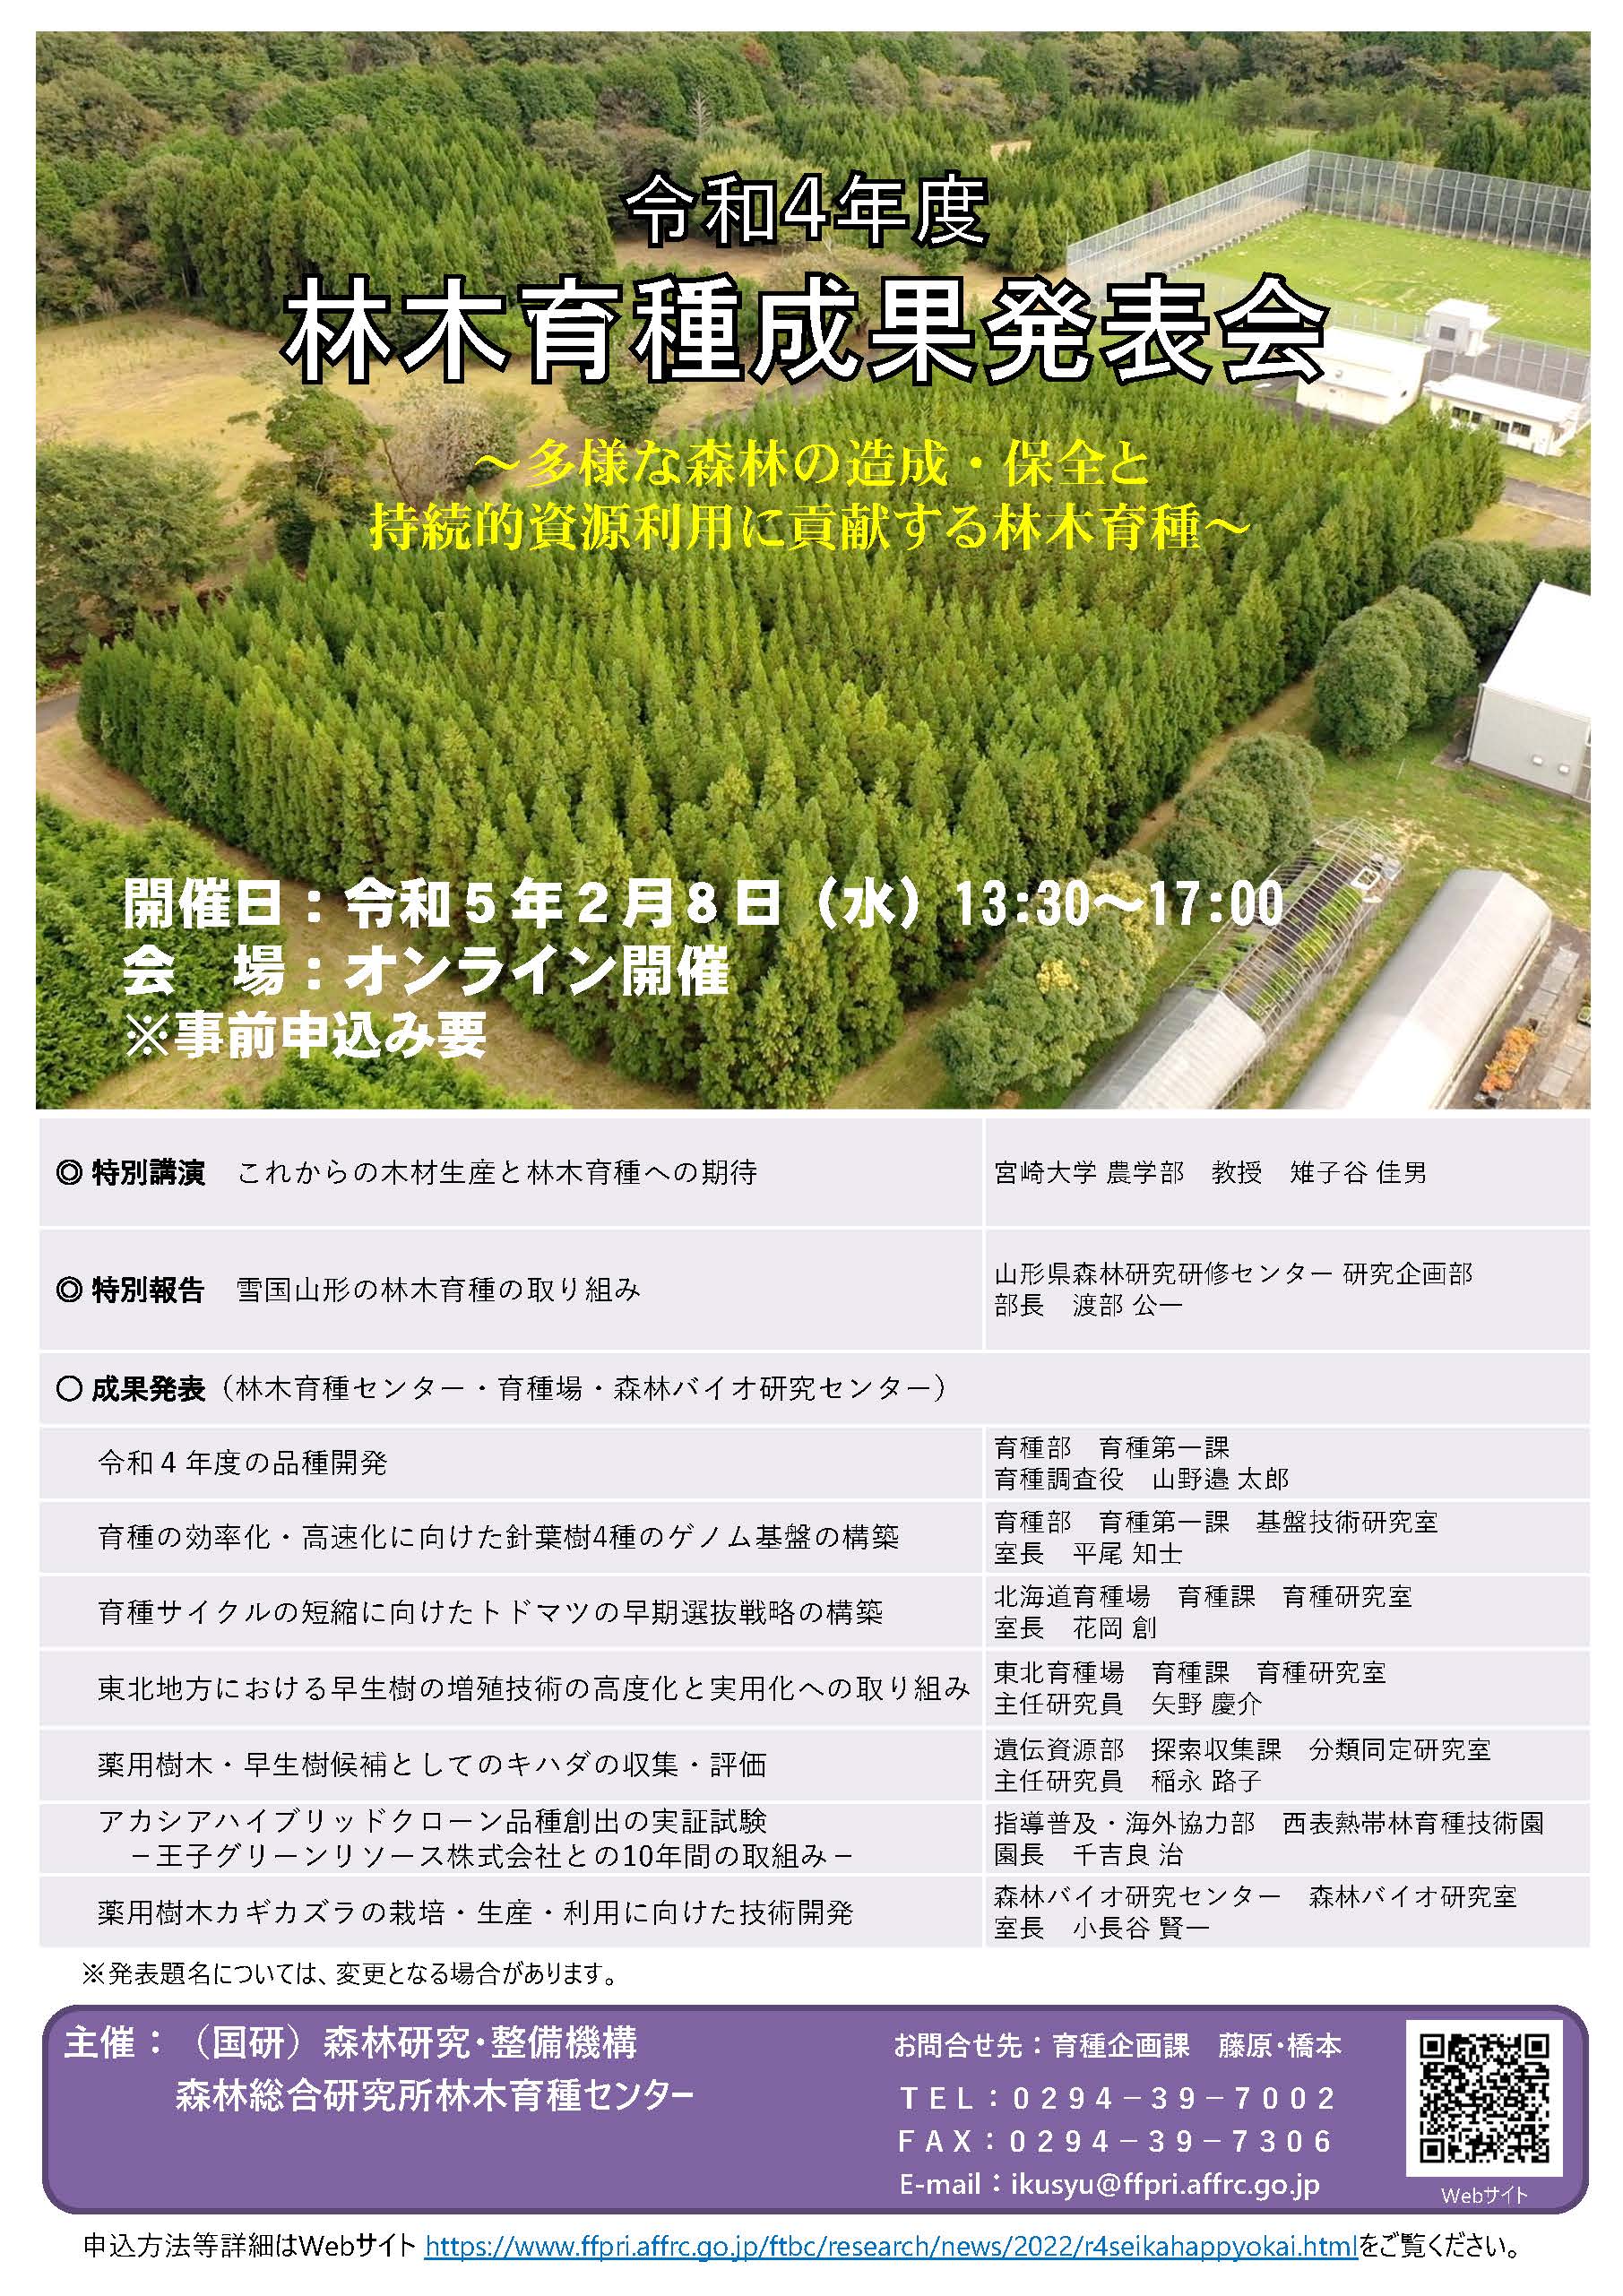 令和４年度林木育種成果発表会のオンライン開催のお知らせ